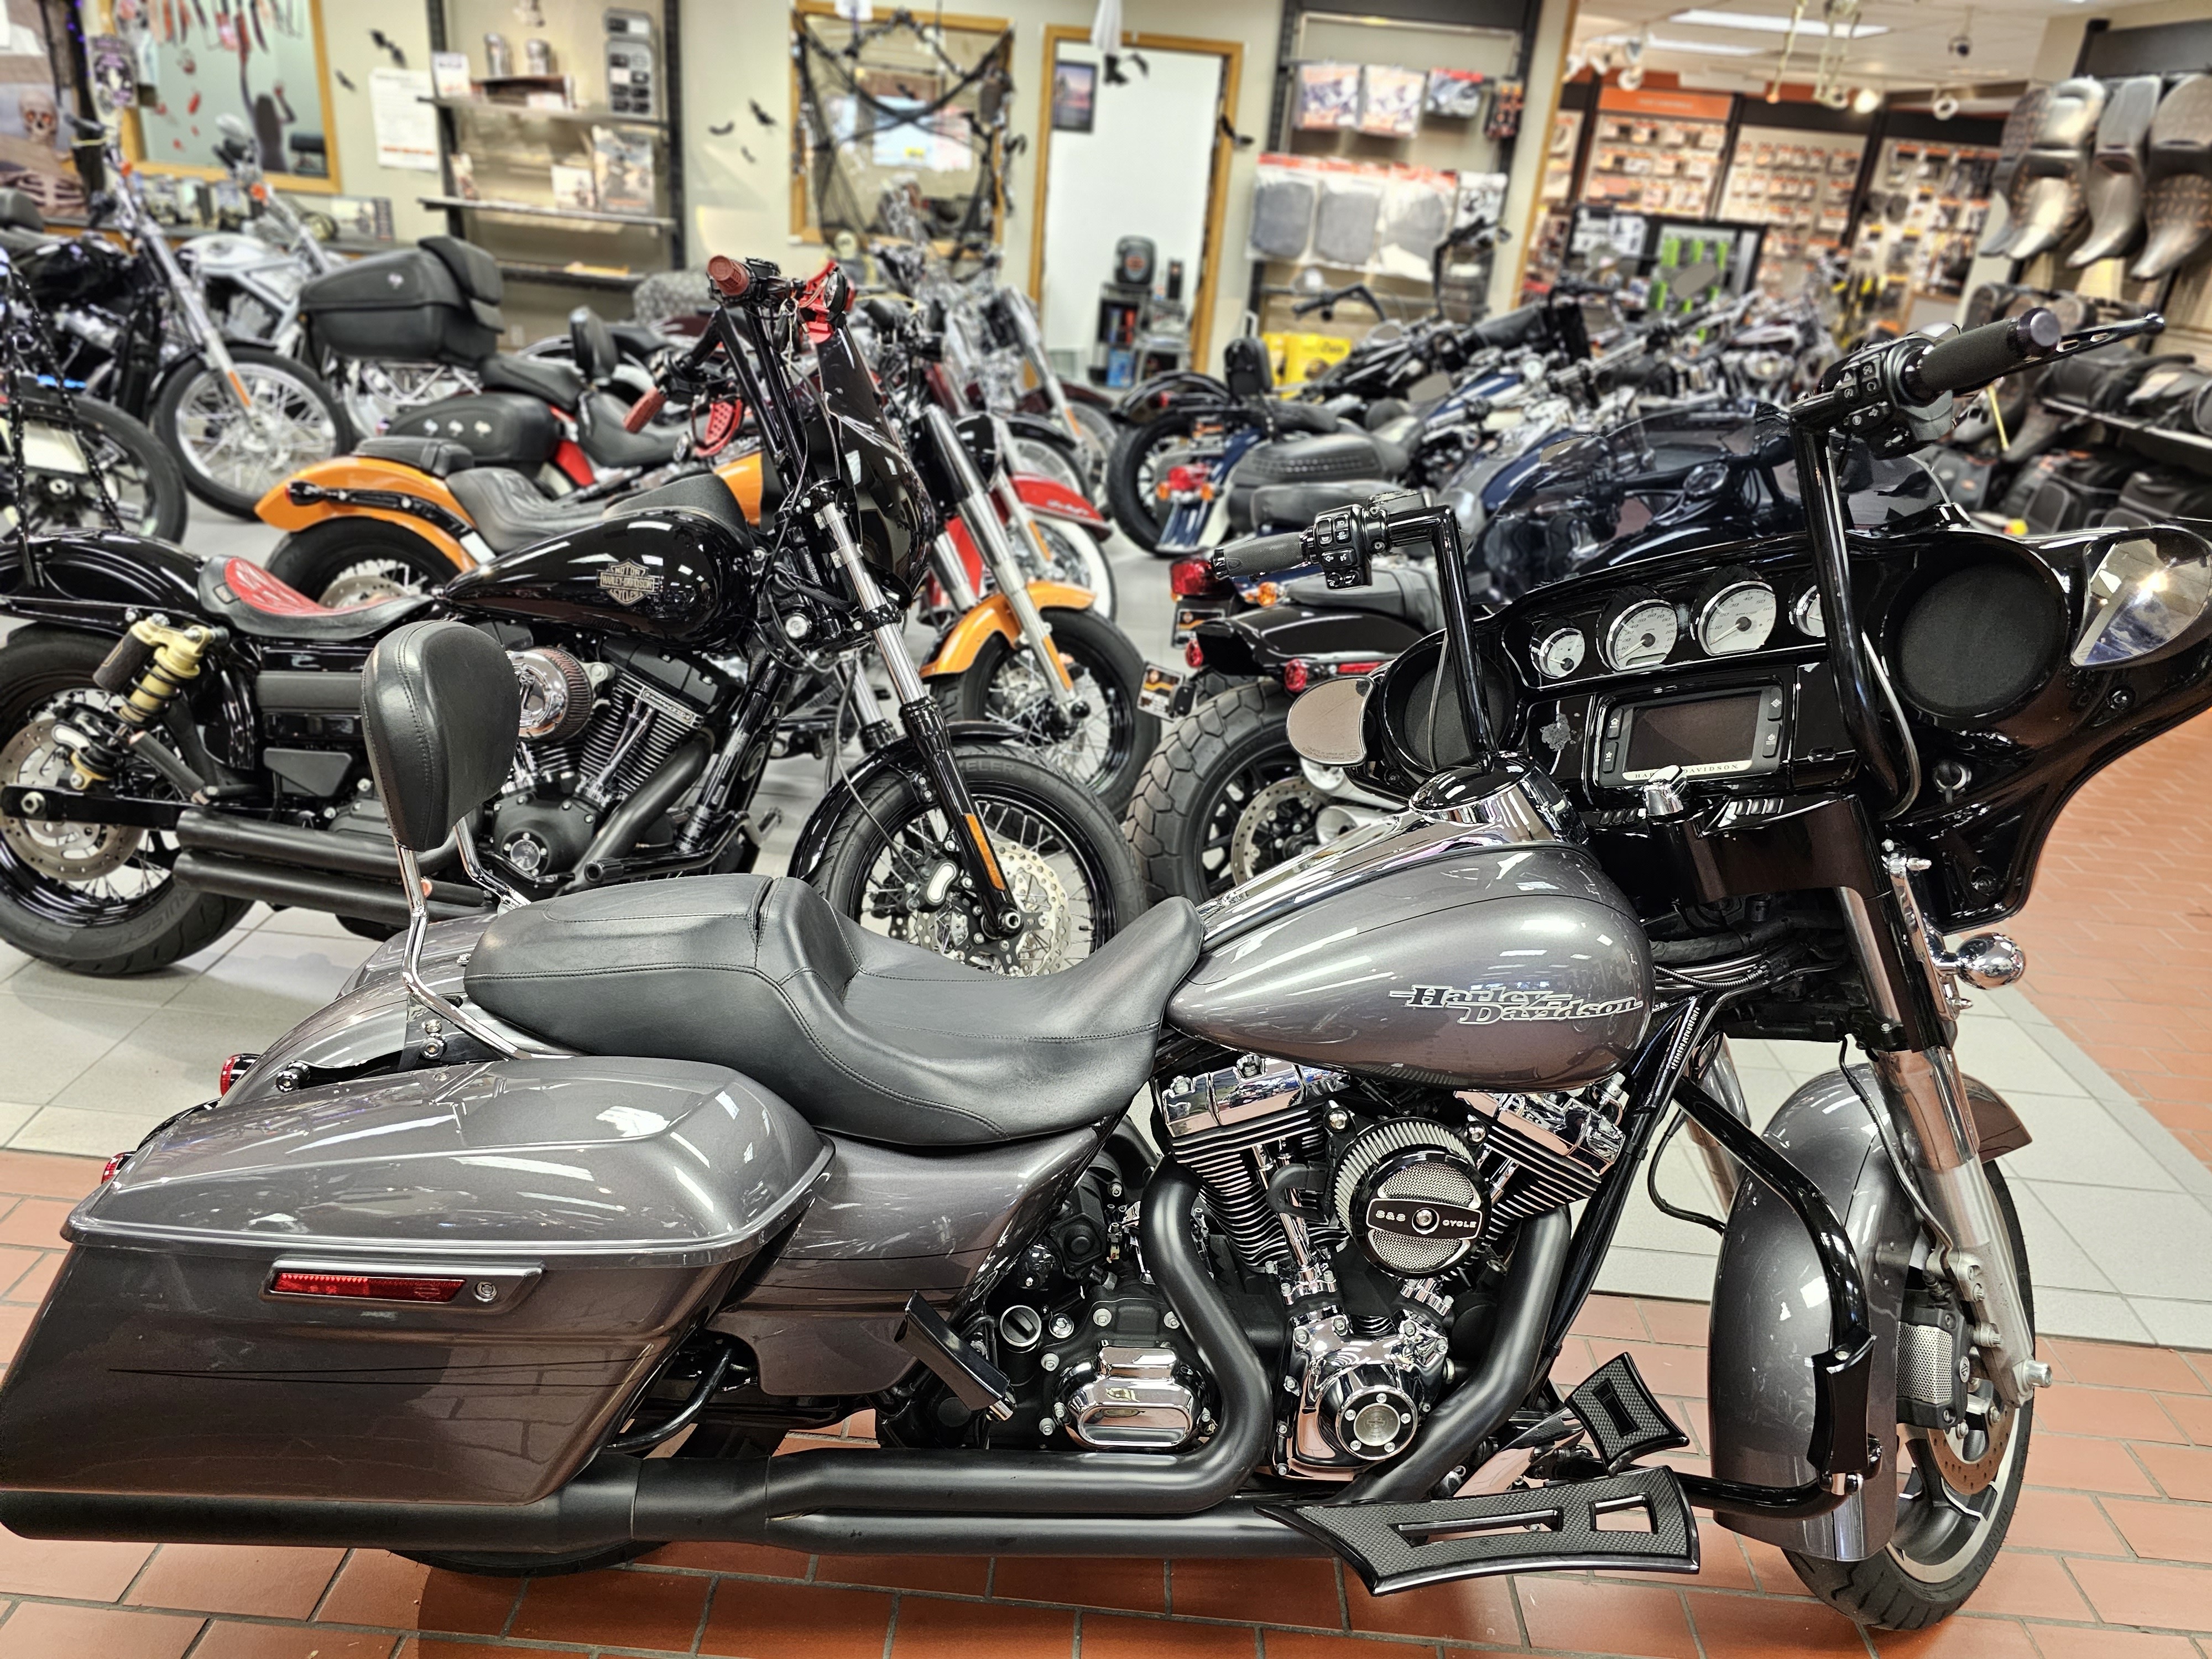 2015 Harley-Davidson Street Glide Special at Rooster's Harley Davidson